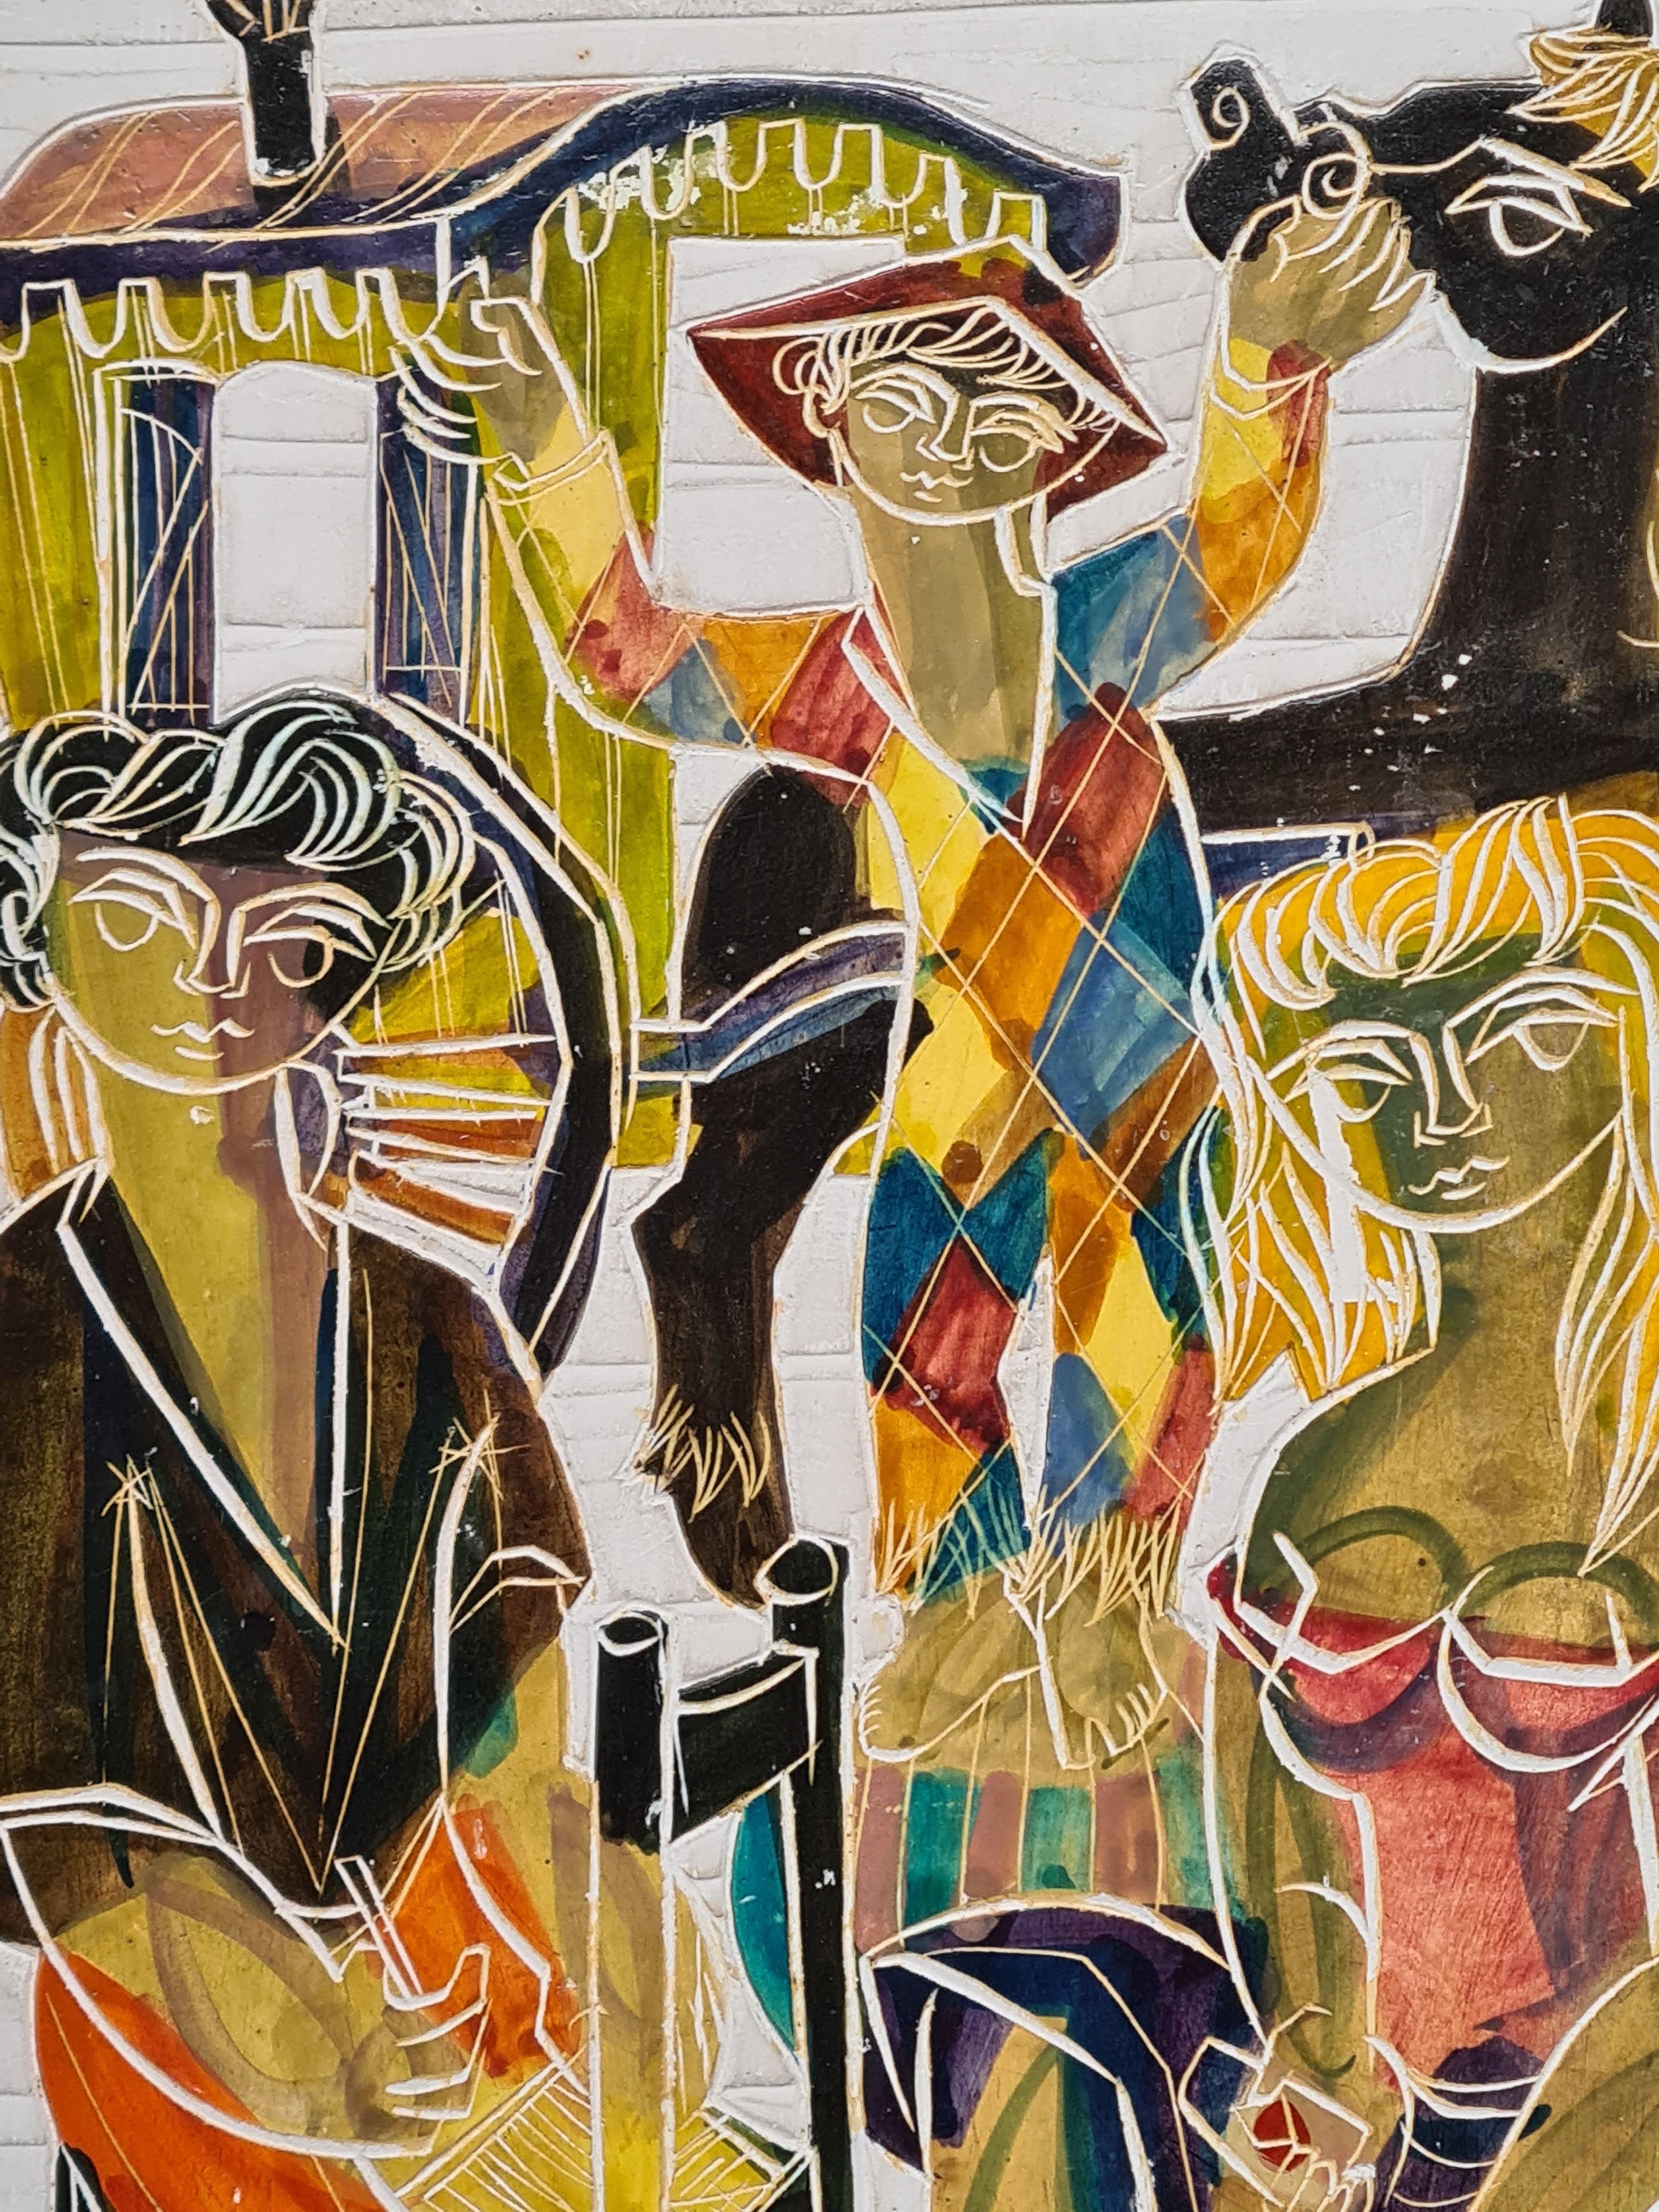 Sgraffite sur plâtre du milieu du 20e siècle par Jean Pierre de Cayeux. L'œuvre est signée et datée sur la jupe du joueur de cartes, en bas à droite, et sur le châssis de la chaise, en bas à gauche.

Une œuvre très charmante et inhabituelle qui